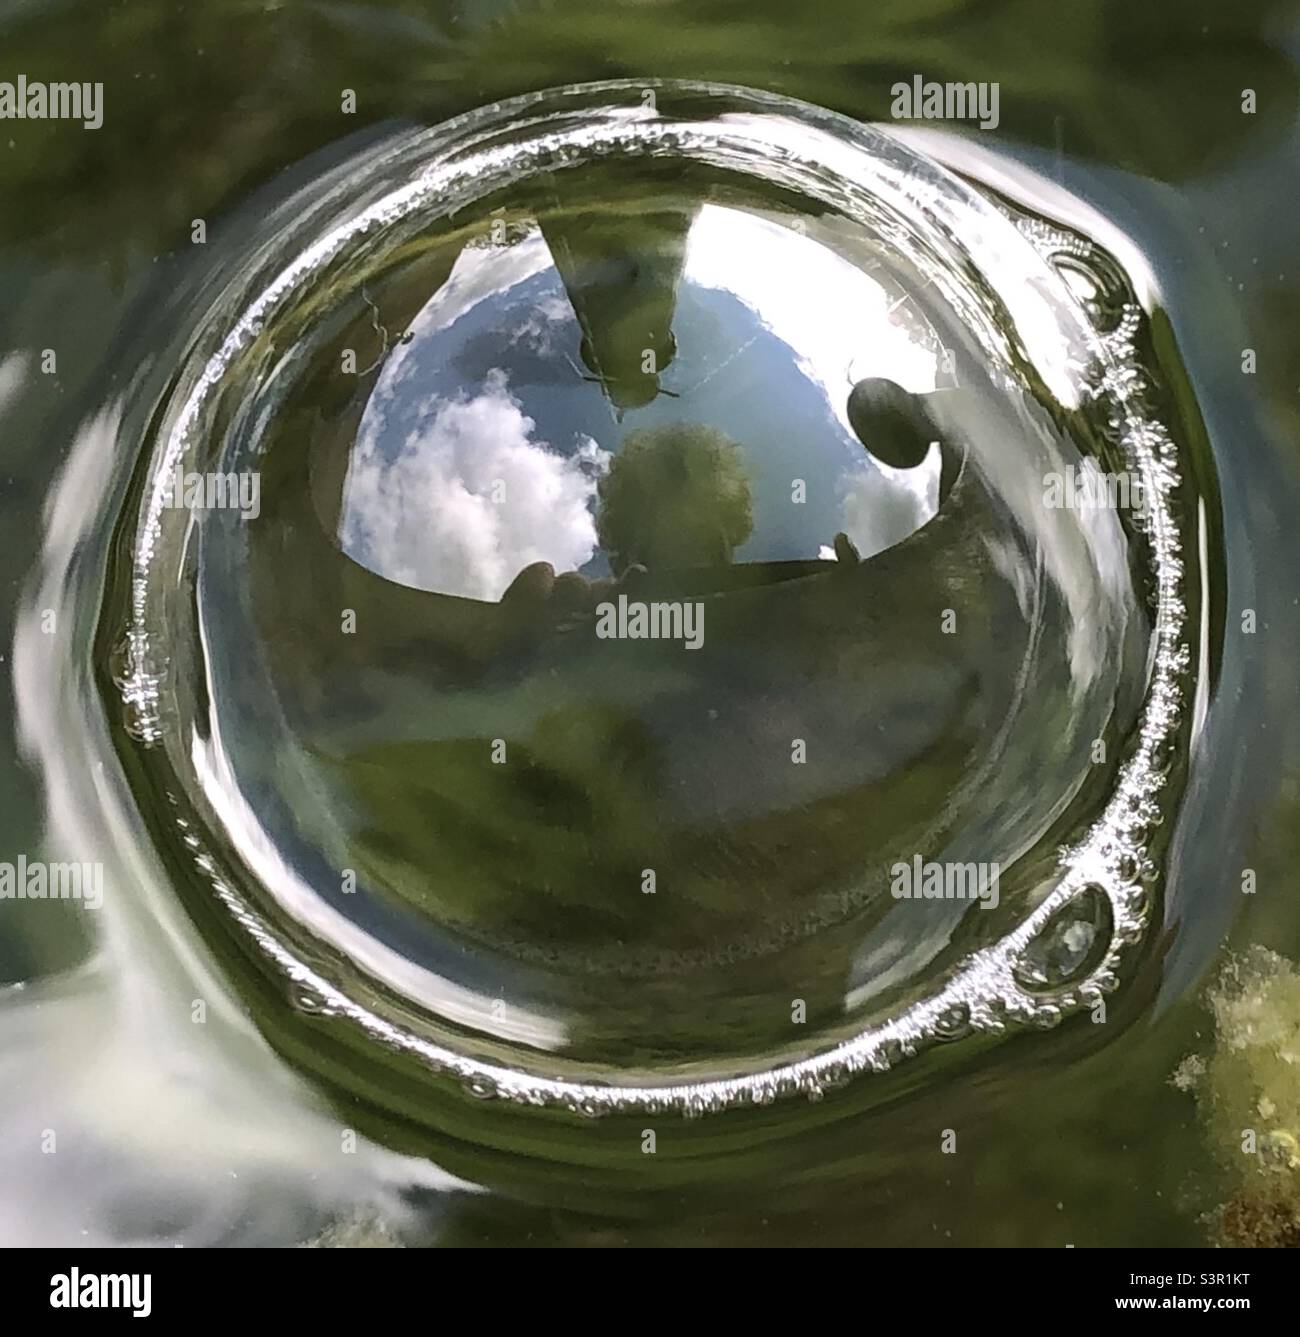 En el ojo de la burbuja. Autorretrato en una burbuja en una fuente con el cielo y la fuente reflejados arriba. Foto de stock